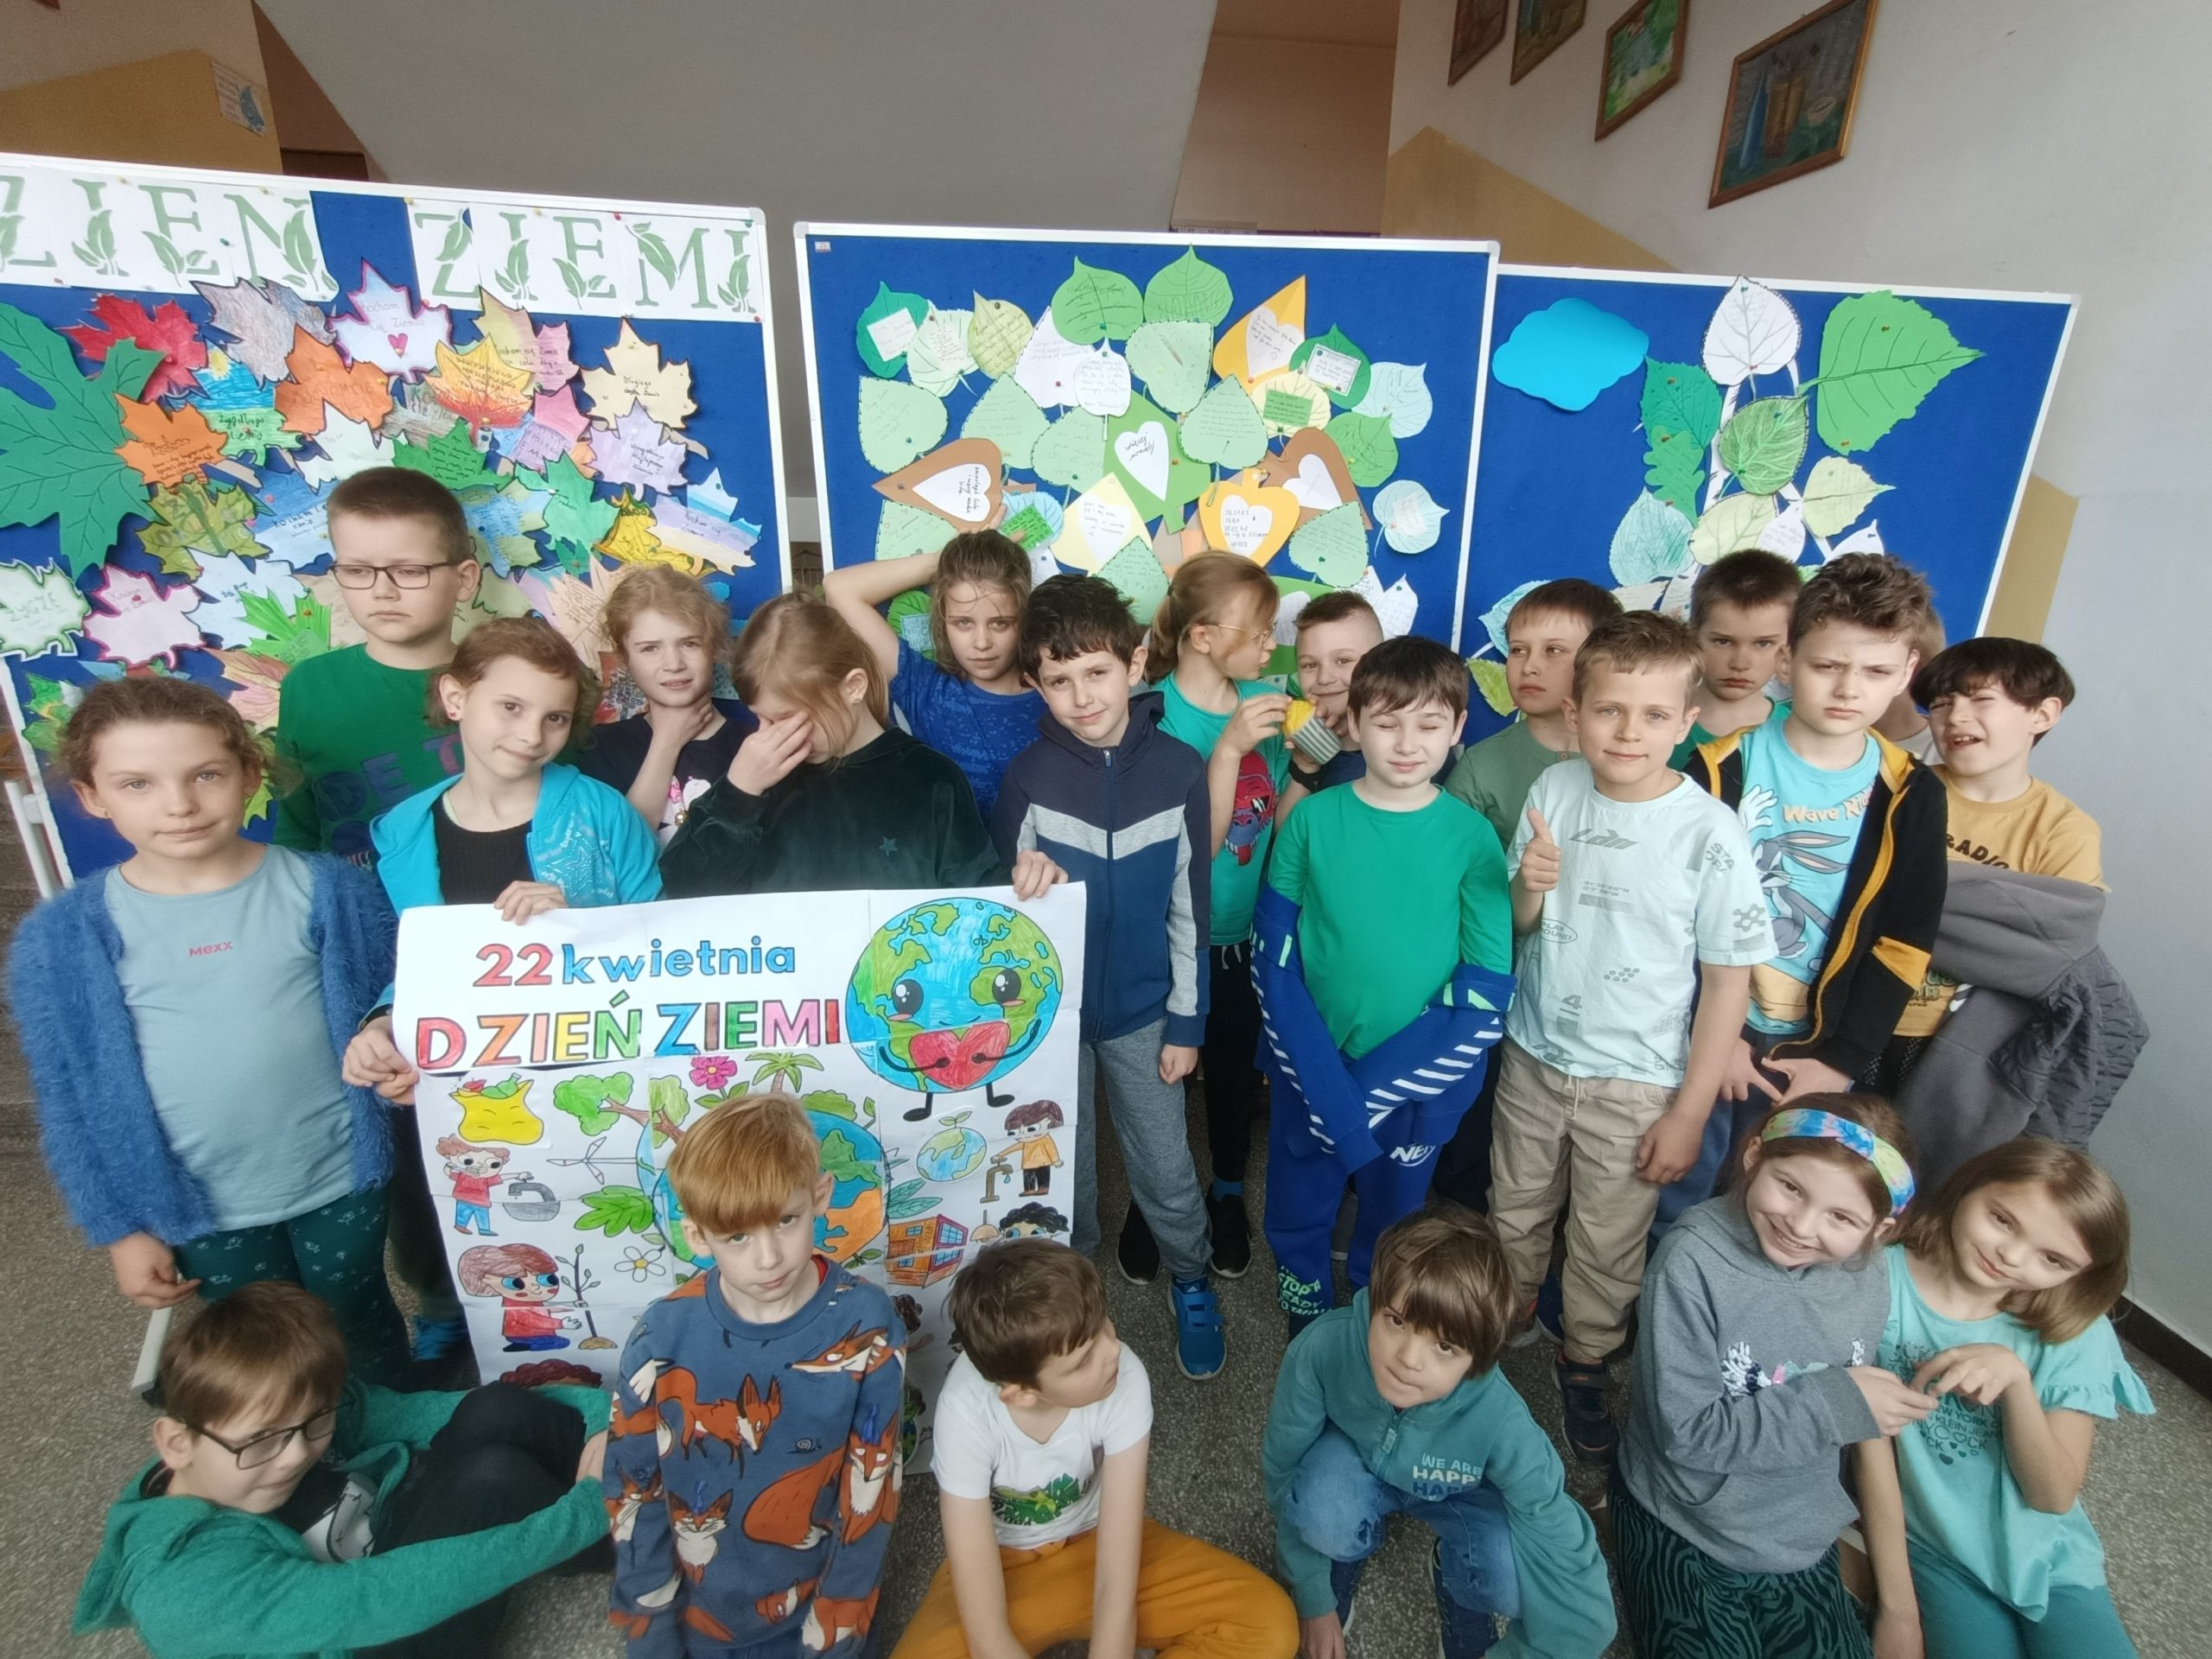 Grupa dzieci ustawiona w dwóch rzędach na szkolnym korytarzu. Dzieci w pierwszym rzędzie klęczą na podłodze, w drugim stoją na tle trzech tablic przedstawiających zrobione z papieru drzewa z liśćmi i napis "Dzień Ziemi". Troje dzieci trzyma plakat o tematyce ekologicznej.